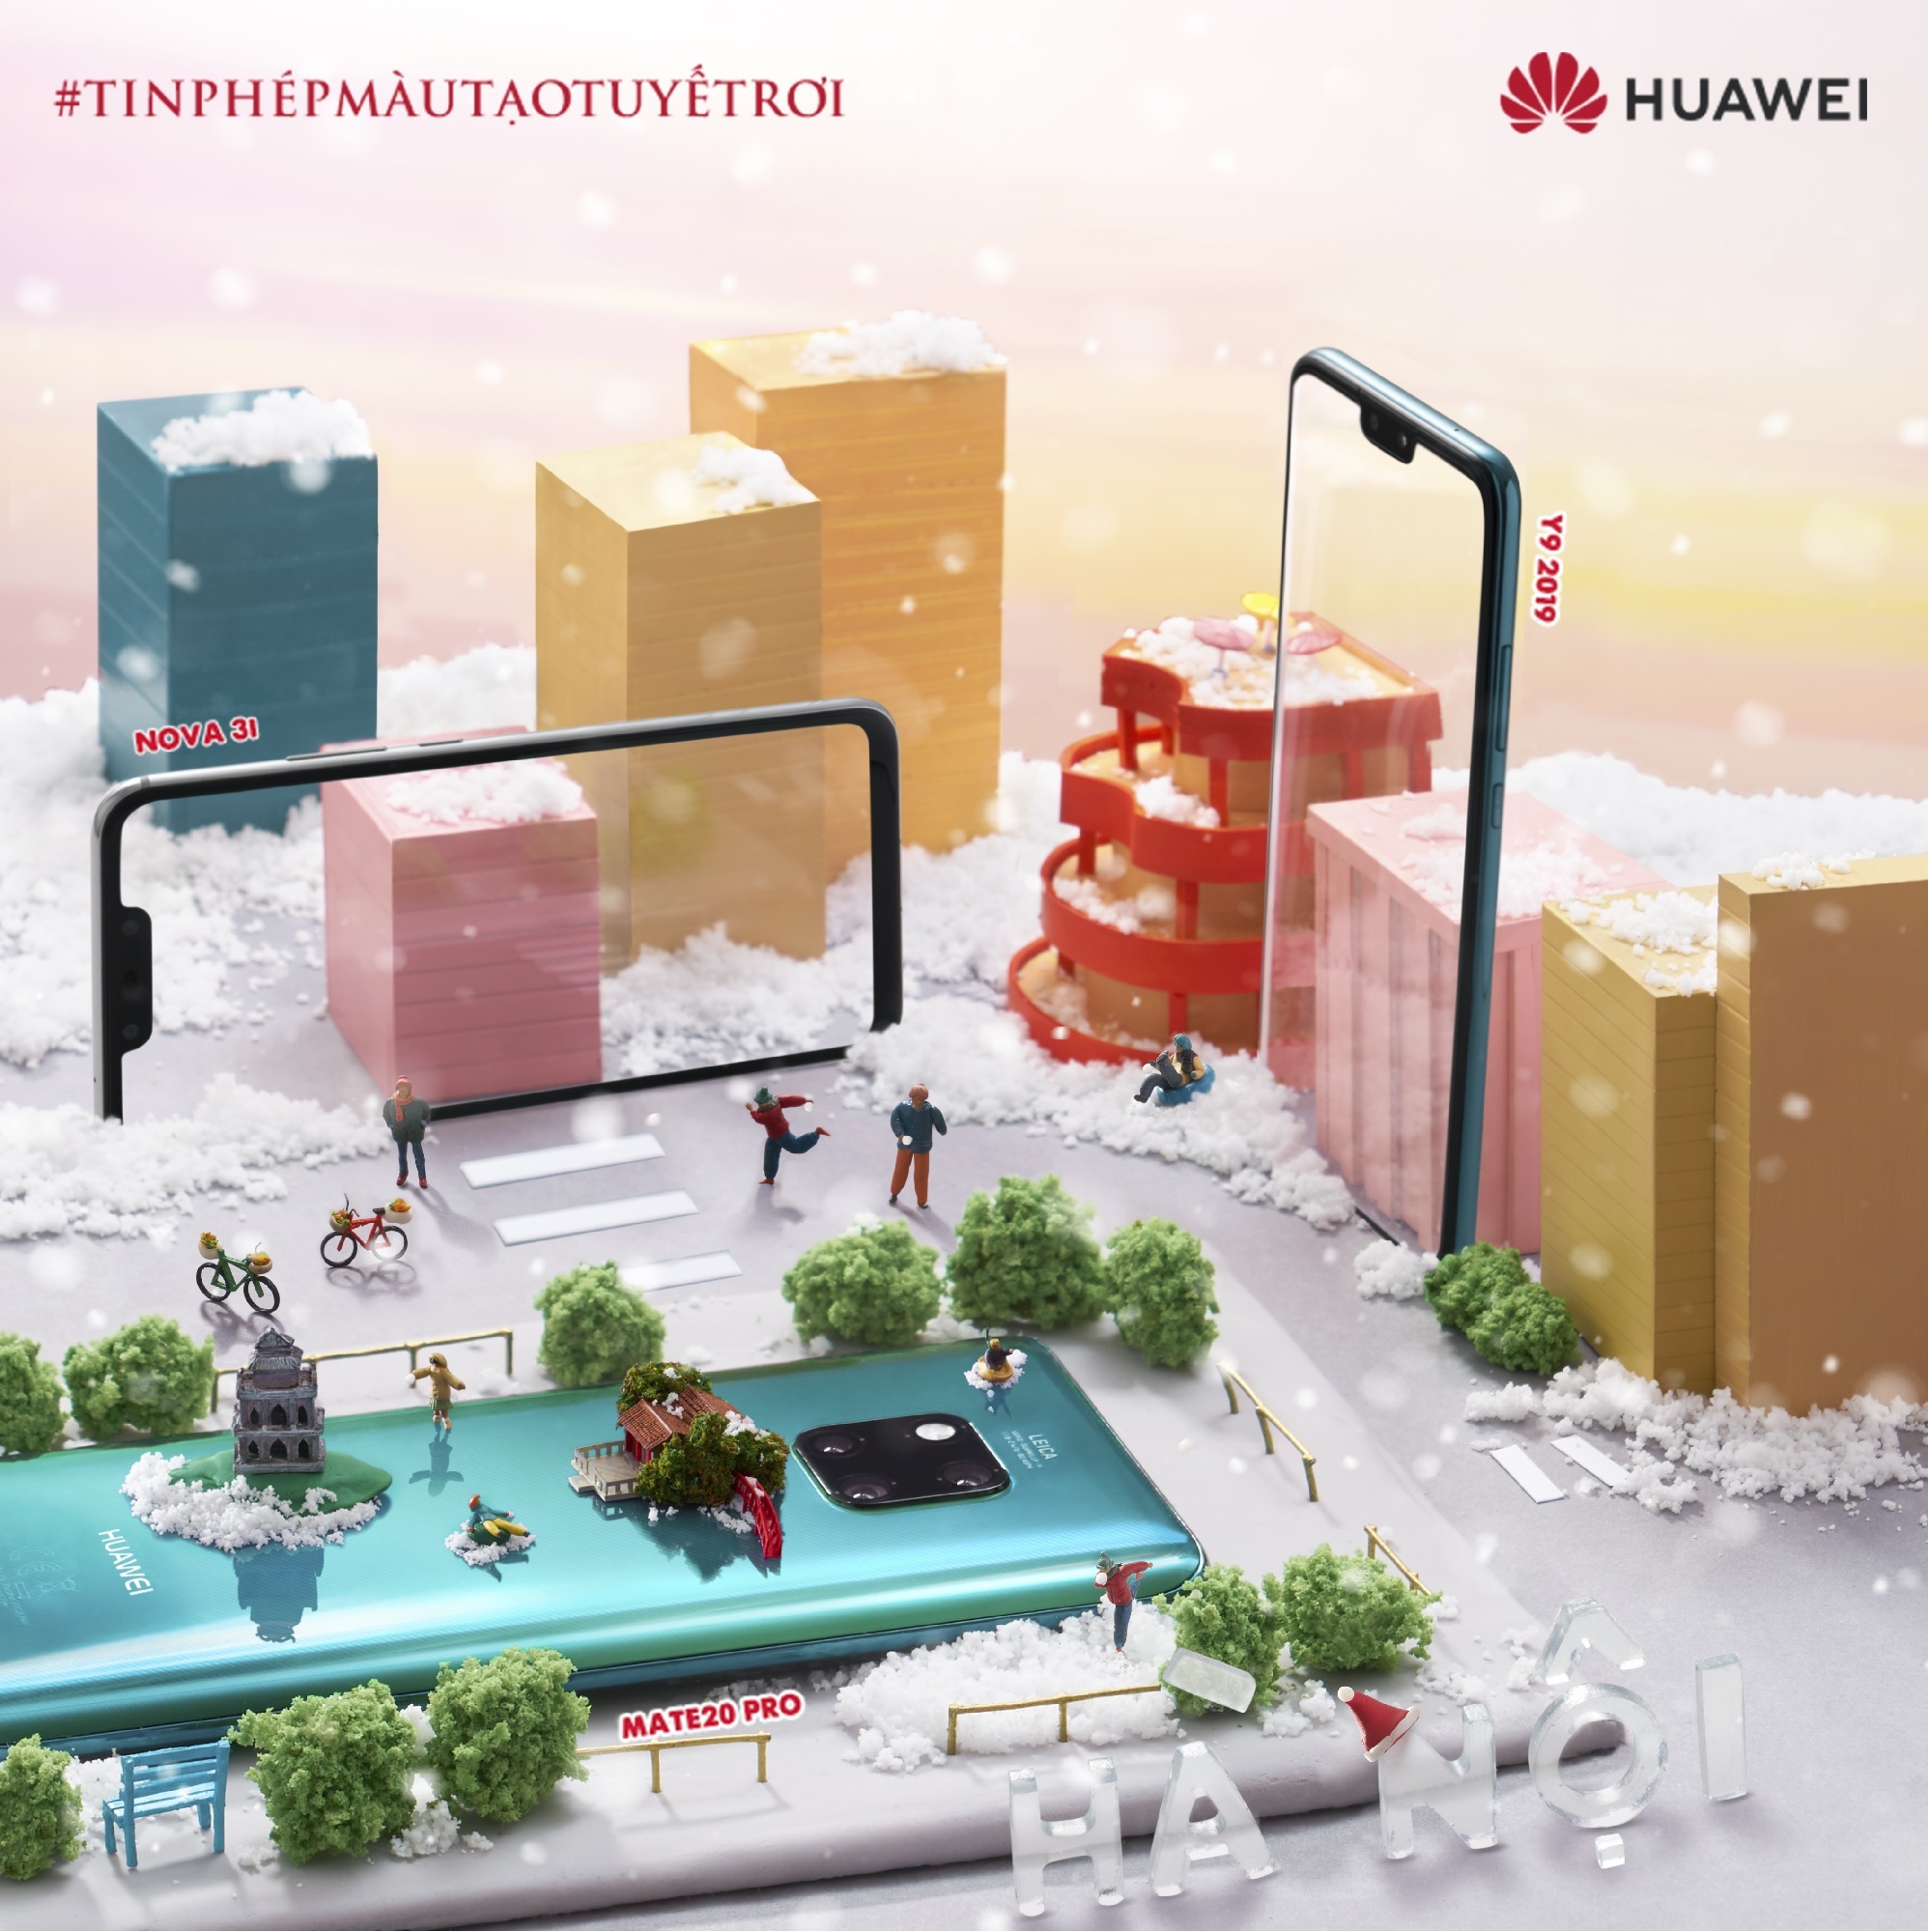 “Mang” tuyết đến Hội An, Hồ Chí Minh… Huawei khiến cộng đồng mạng thích thú - Ảnh 3.